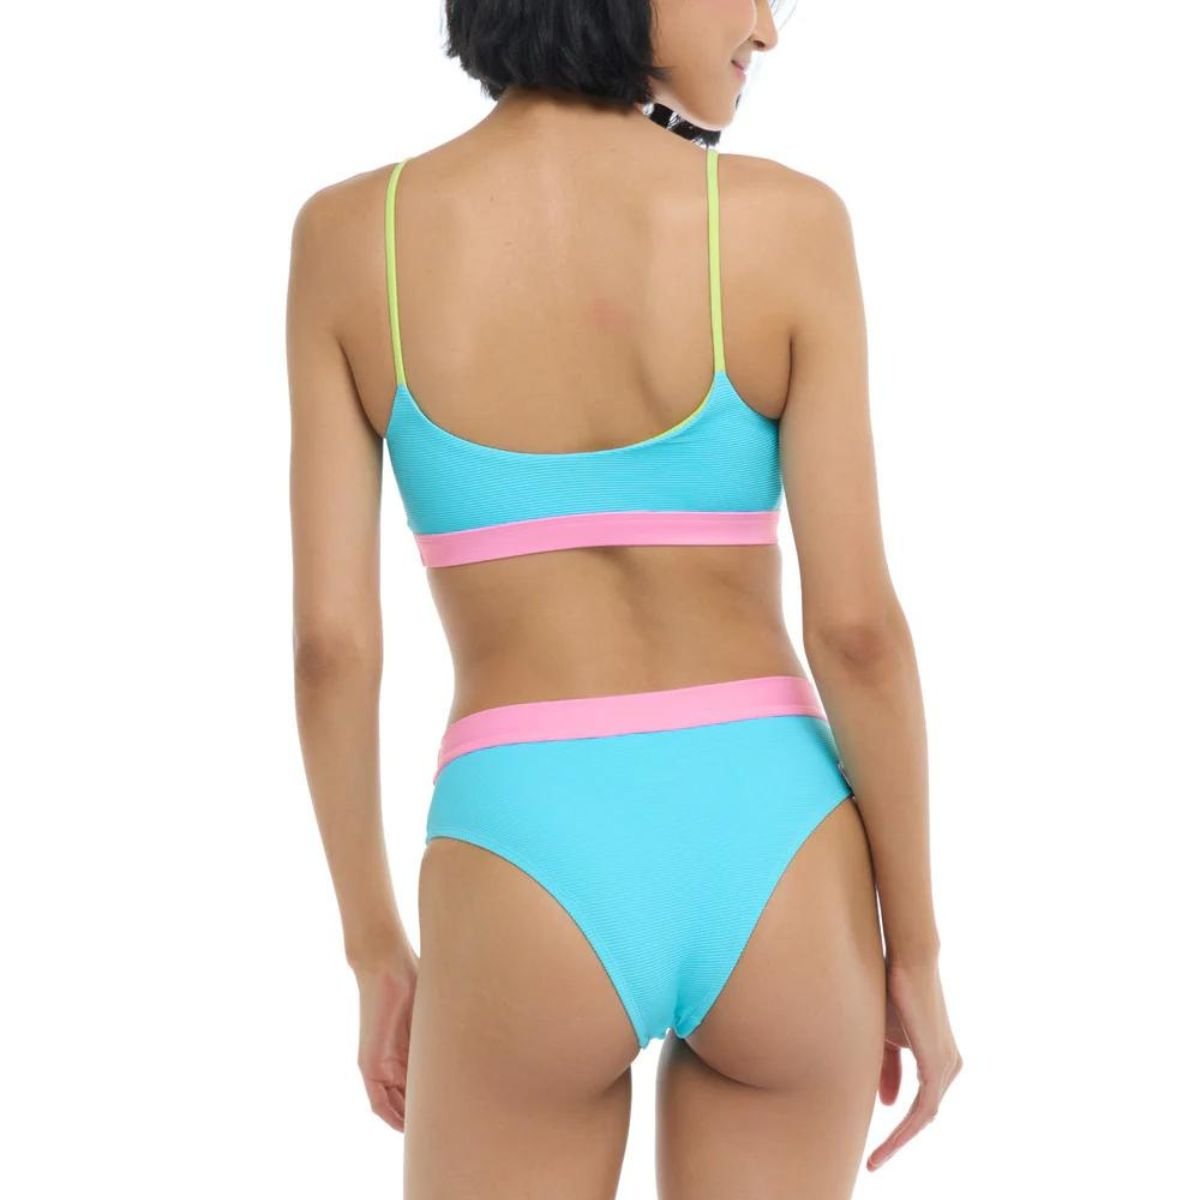 Body Glove Spectrum Aro Bikini Top in Cyan - BoardCo